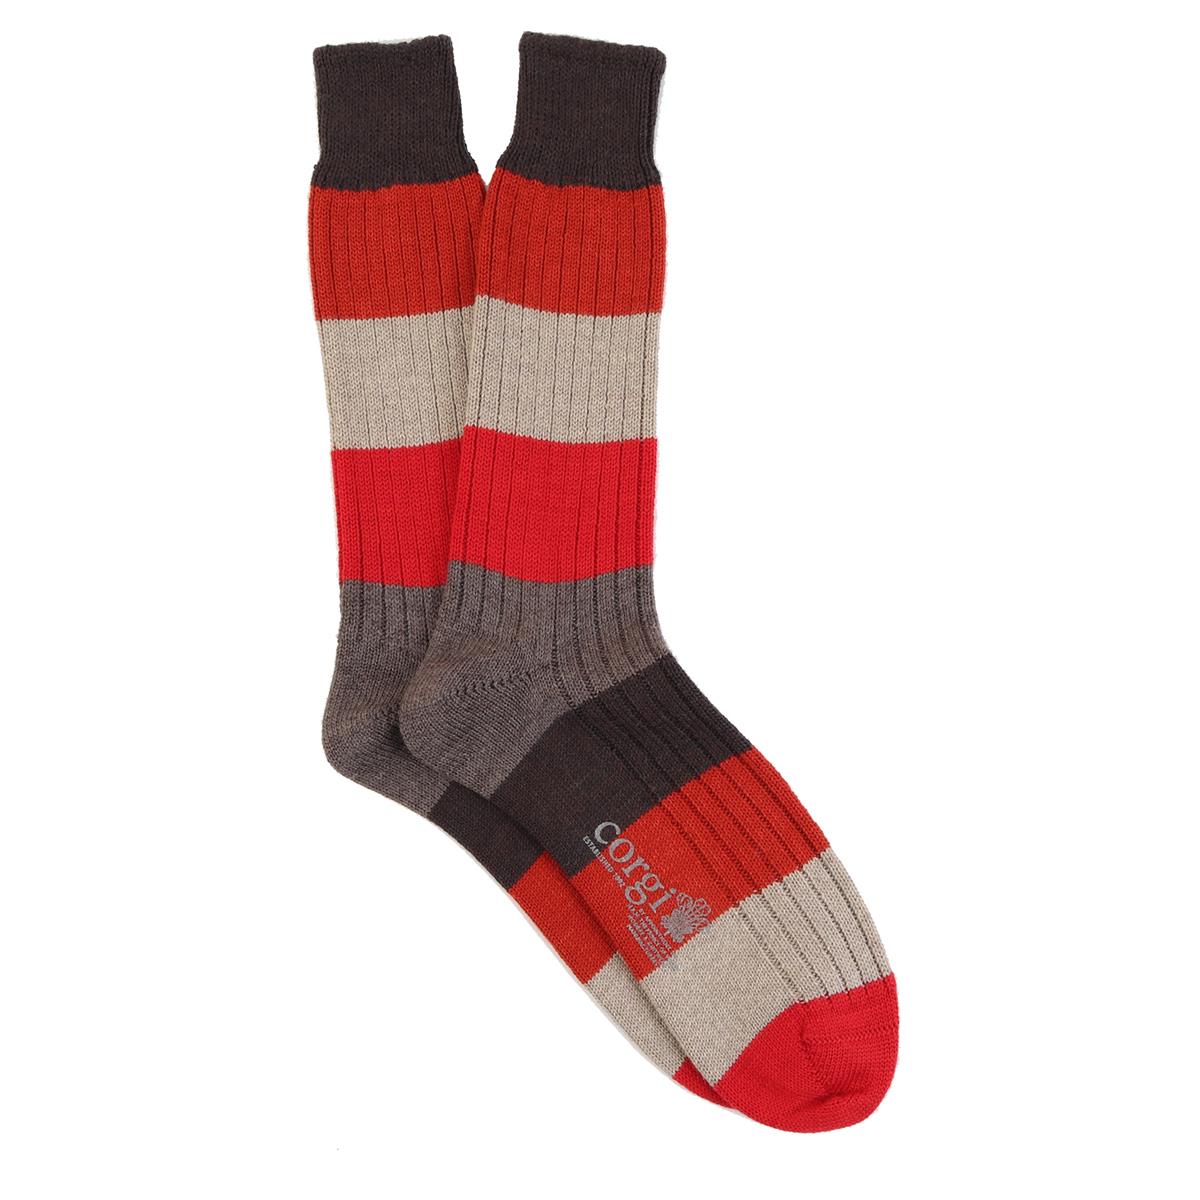 Colour Block Wool & Cotton Socks - Men's - Outlet